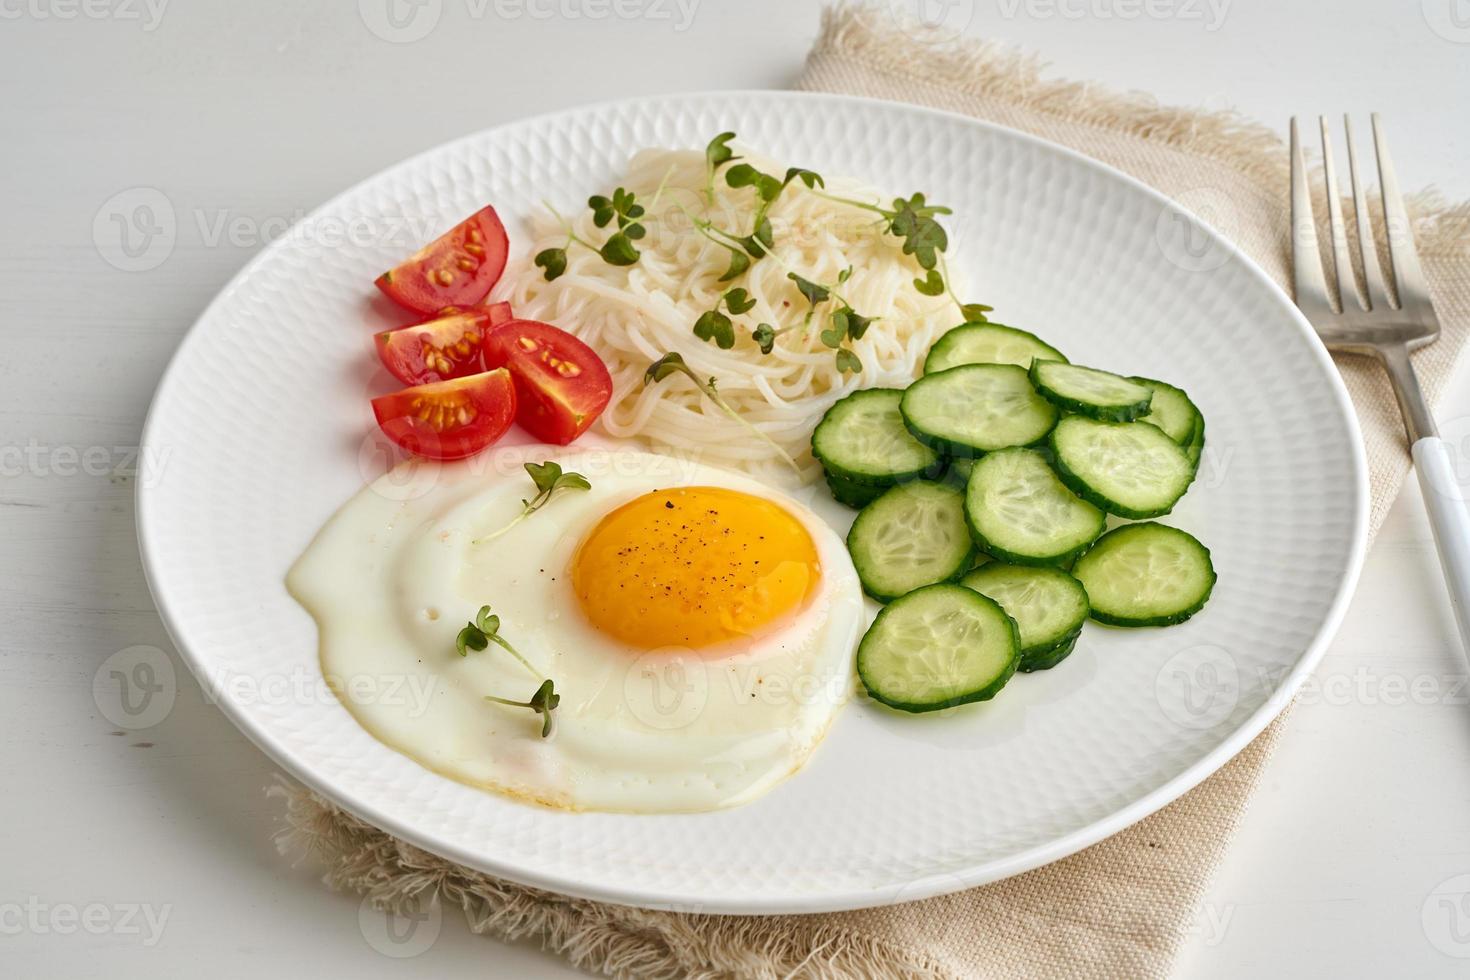 gezond ontbijt - gebakken ei met kerstomaatjes en komkommer op lichte witte achtergrond, fodmap dash dieet, glutenvrij, zijaanzicht close-up foto